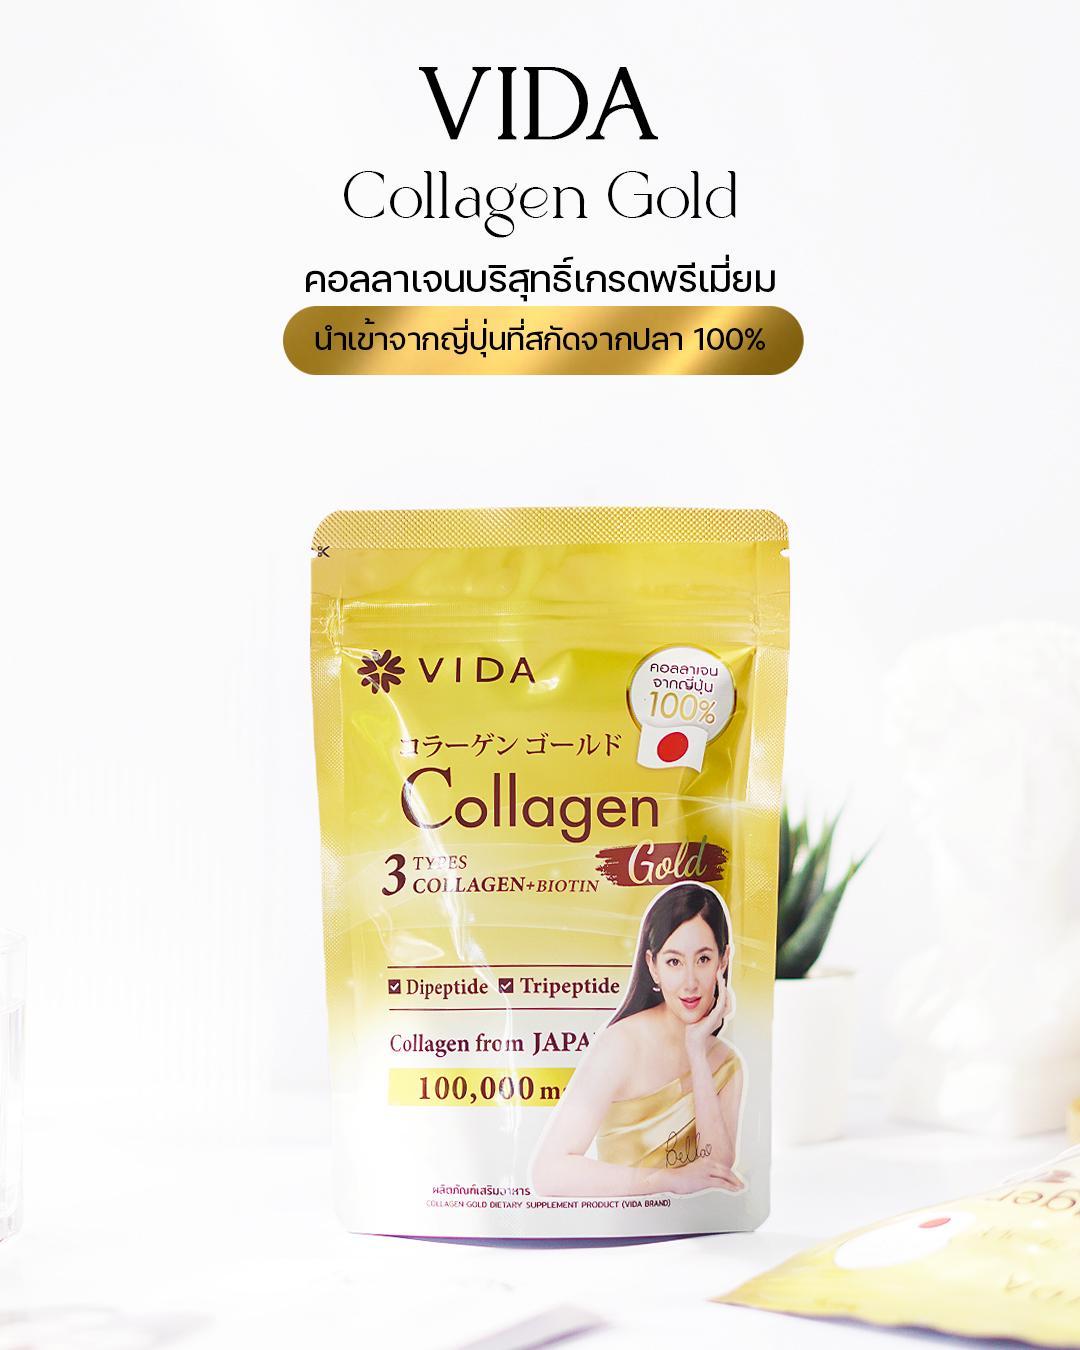 ภาพหน้าปก รีวิว Vida Collagen Gold ตัวช่วยเพื่อผิวสวย 2 สัปดาห์ รู้เรื่อง! ที่:0